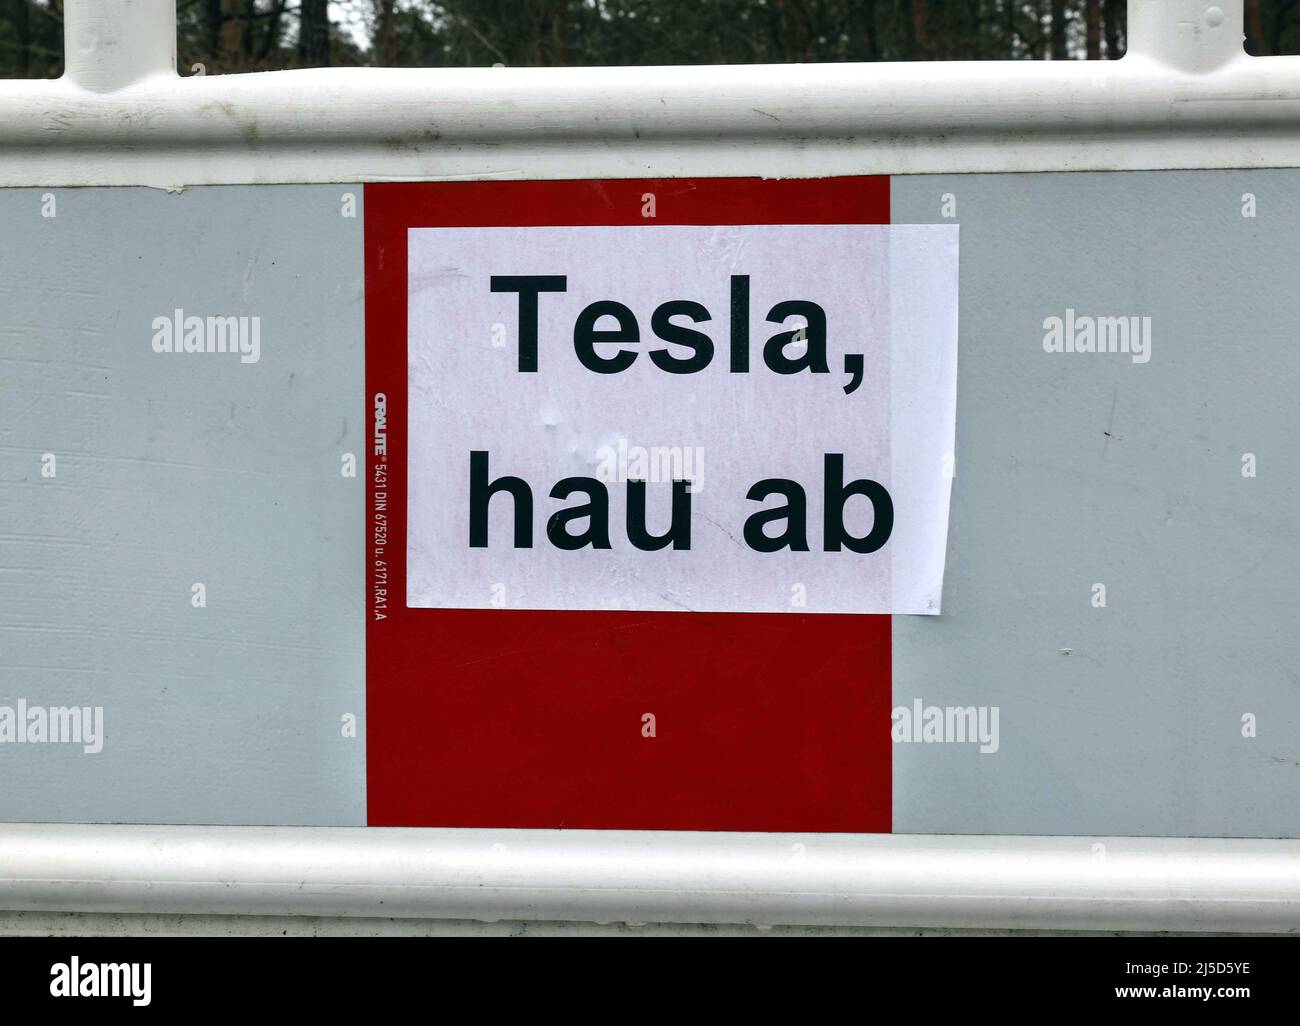 Gruenheide, 26.02.2022 - signe de protestation contre la construction du Gigalactory de Tesla à Gruenheide. De nombreux citoyens de Gruenheide et des environs sont contre la construction de l'usine de Tesla. [traduction automatique] Banque D'Images